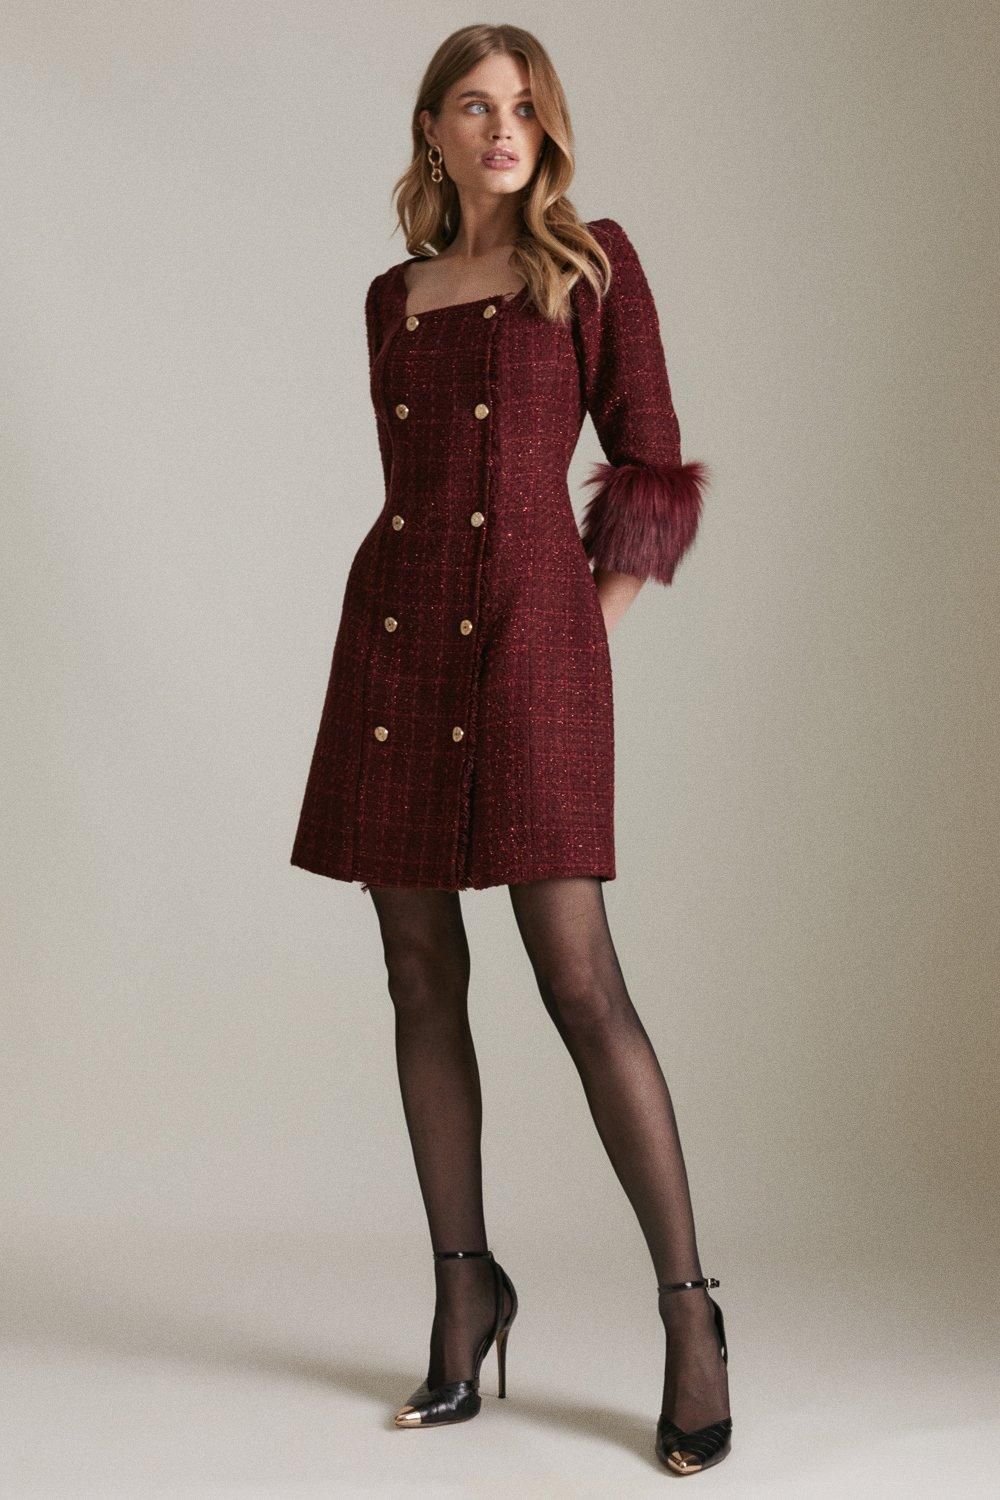 Sparkle Tweed And Faux Fur Cuff Db Mini Dress | Karen Millen UK & IE